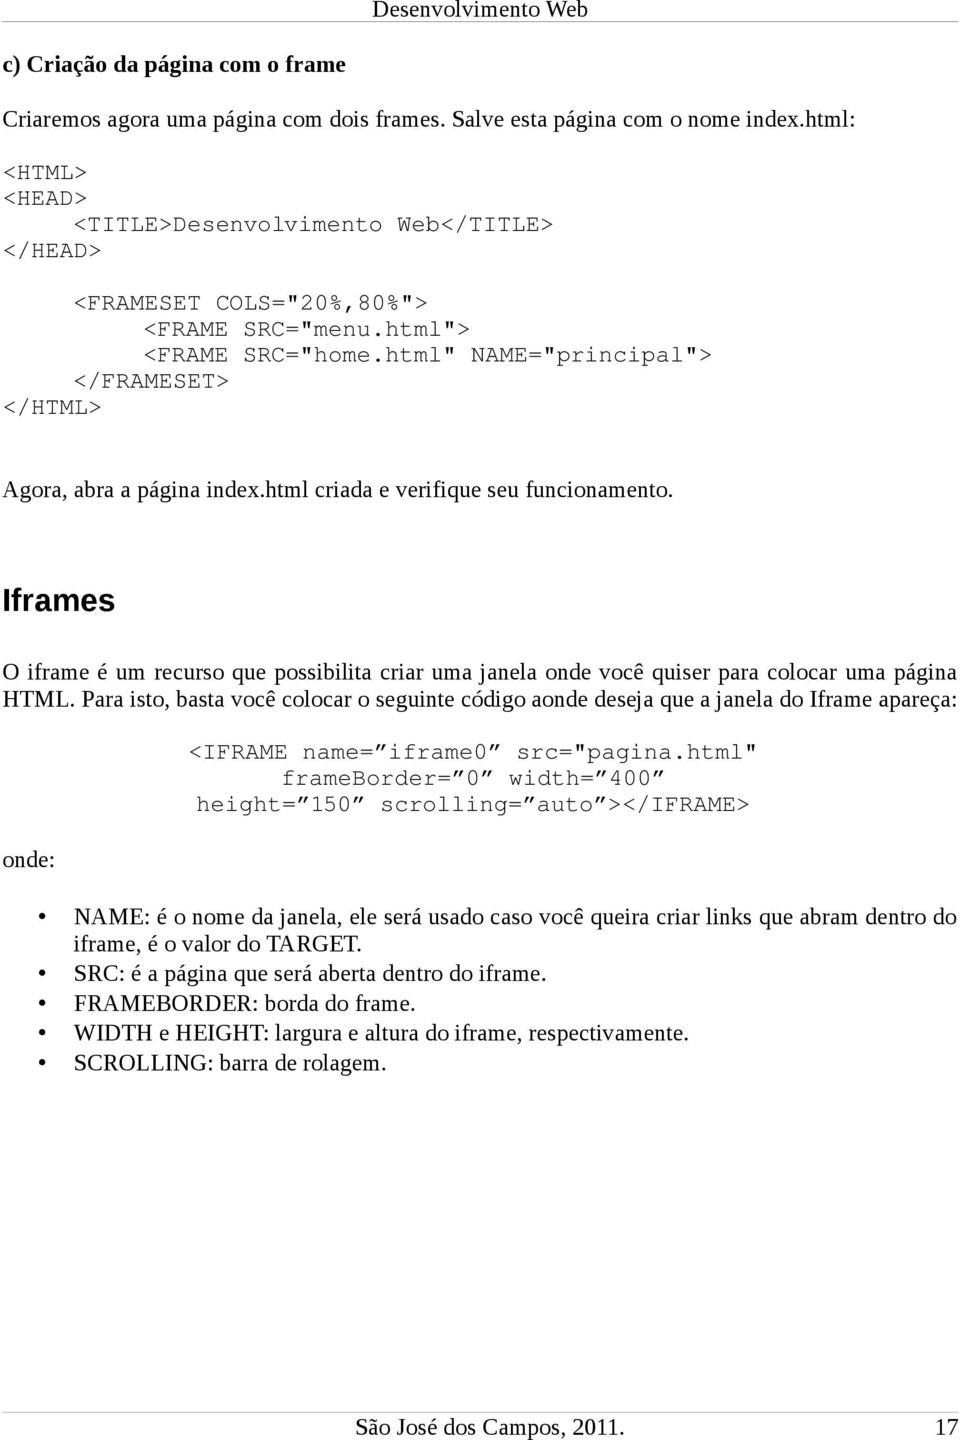 Iframes O iframe é um recurso que possibilita criar uma janela onde você quiser para colocar uma página HTML.